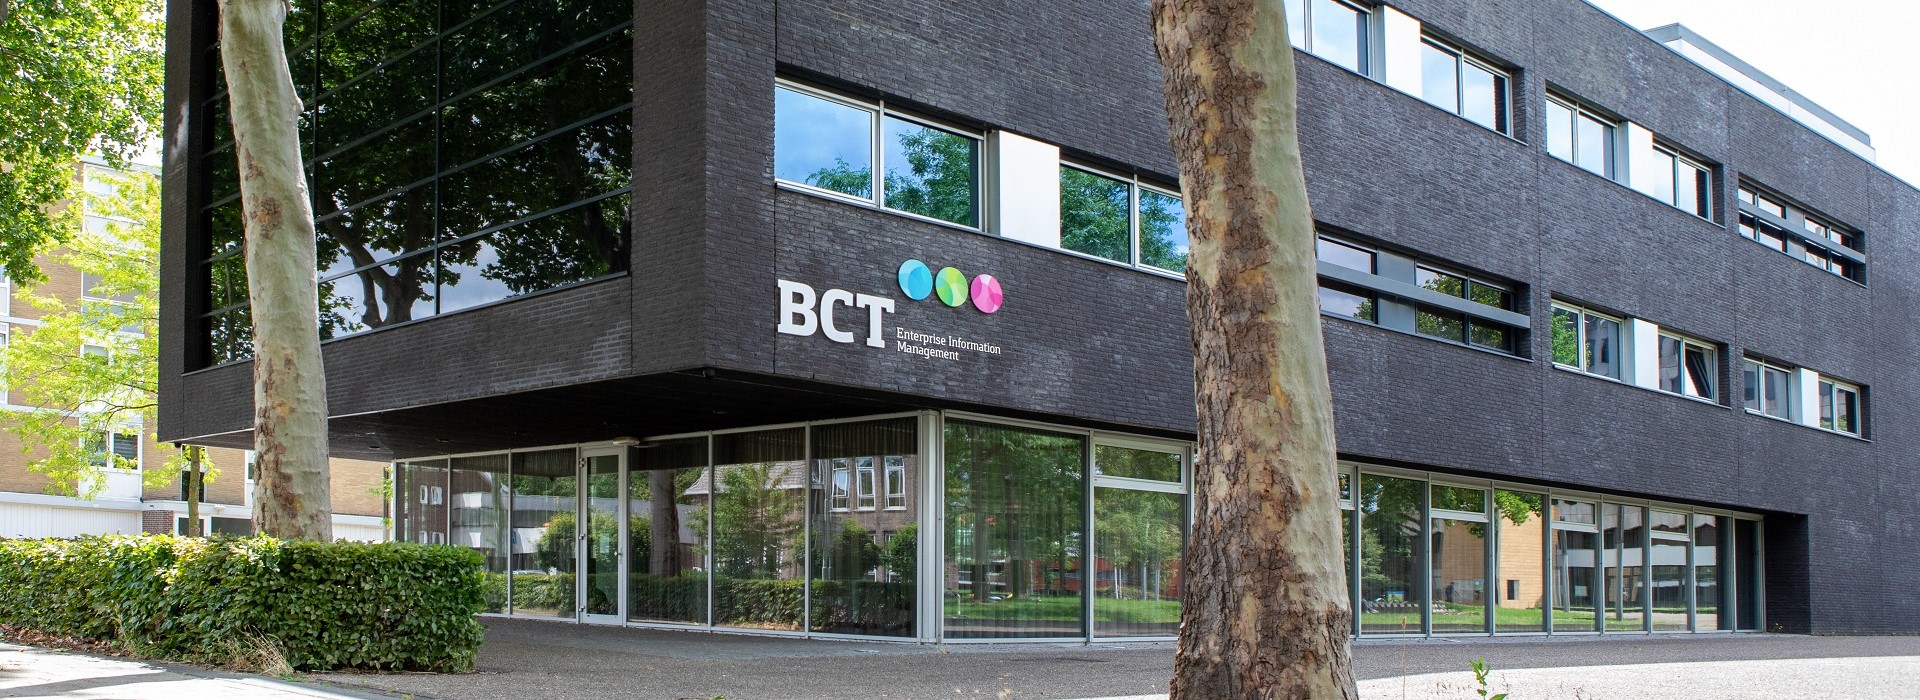 Mehr über BCT erfahren